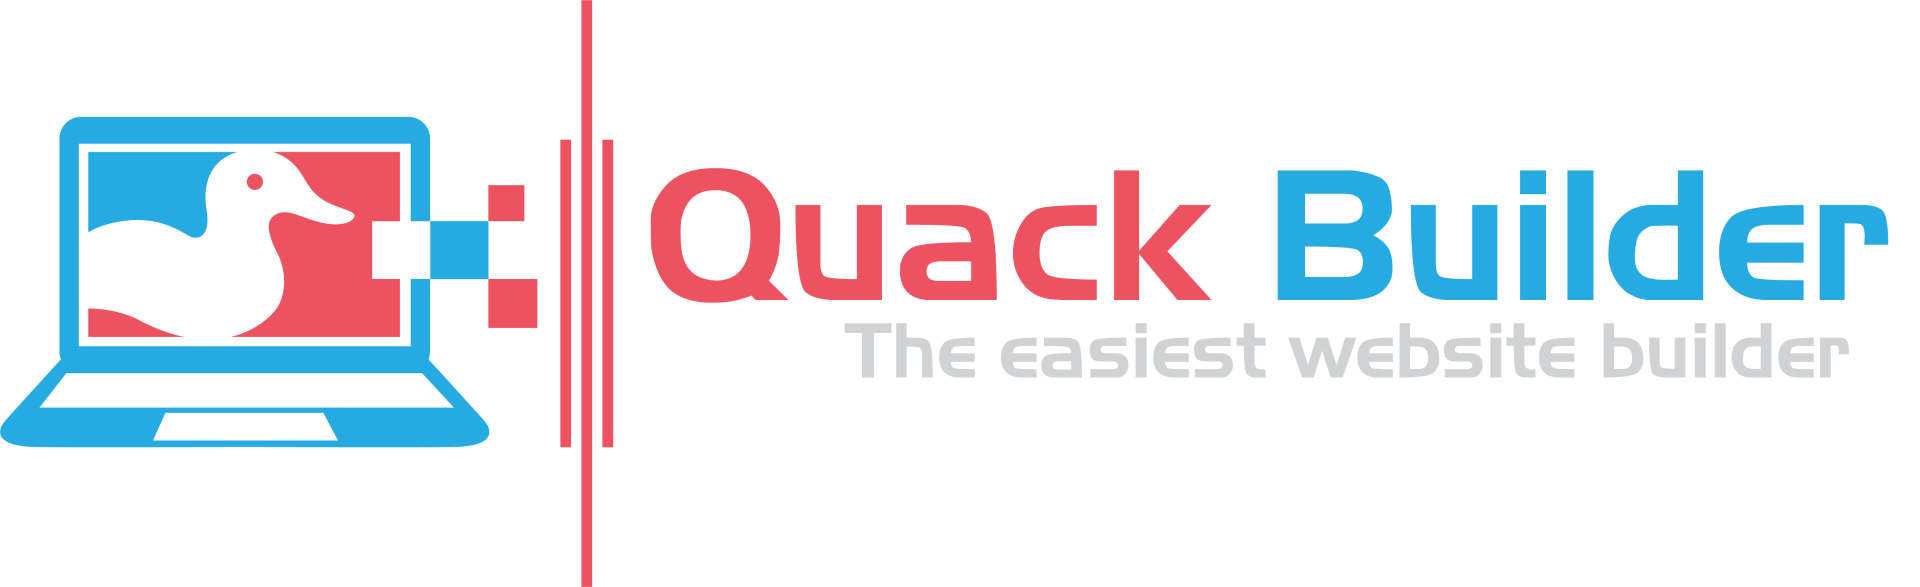 How To Build A Website - Quack Builder - Easy Website Builder